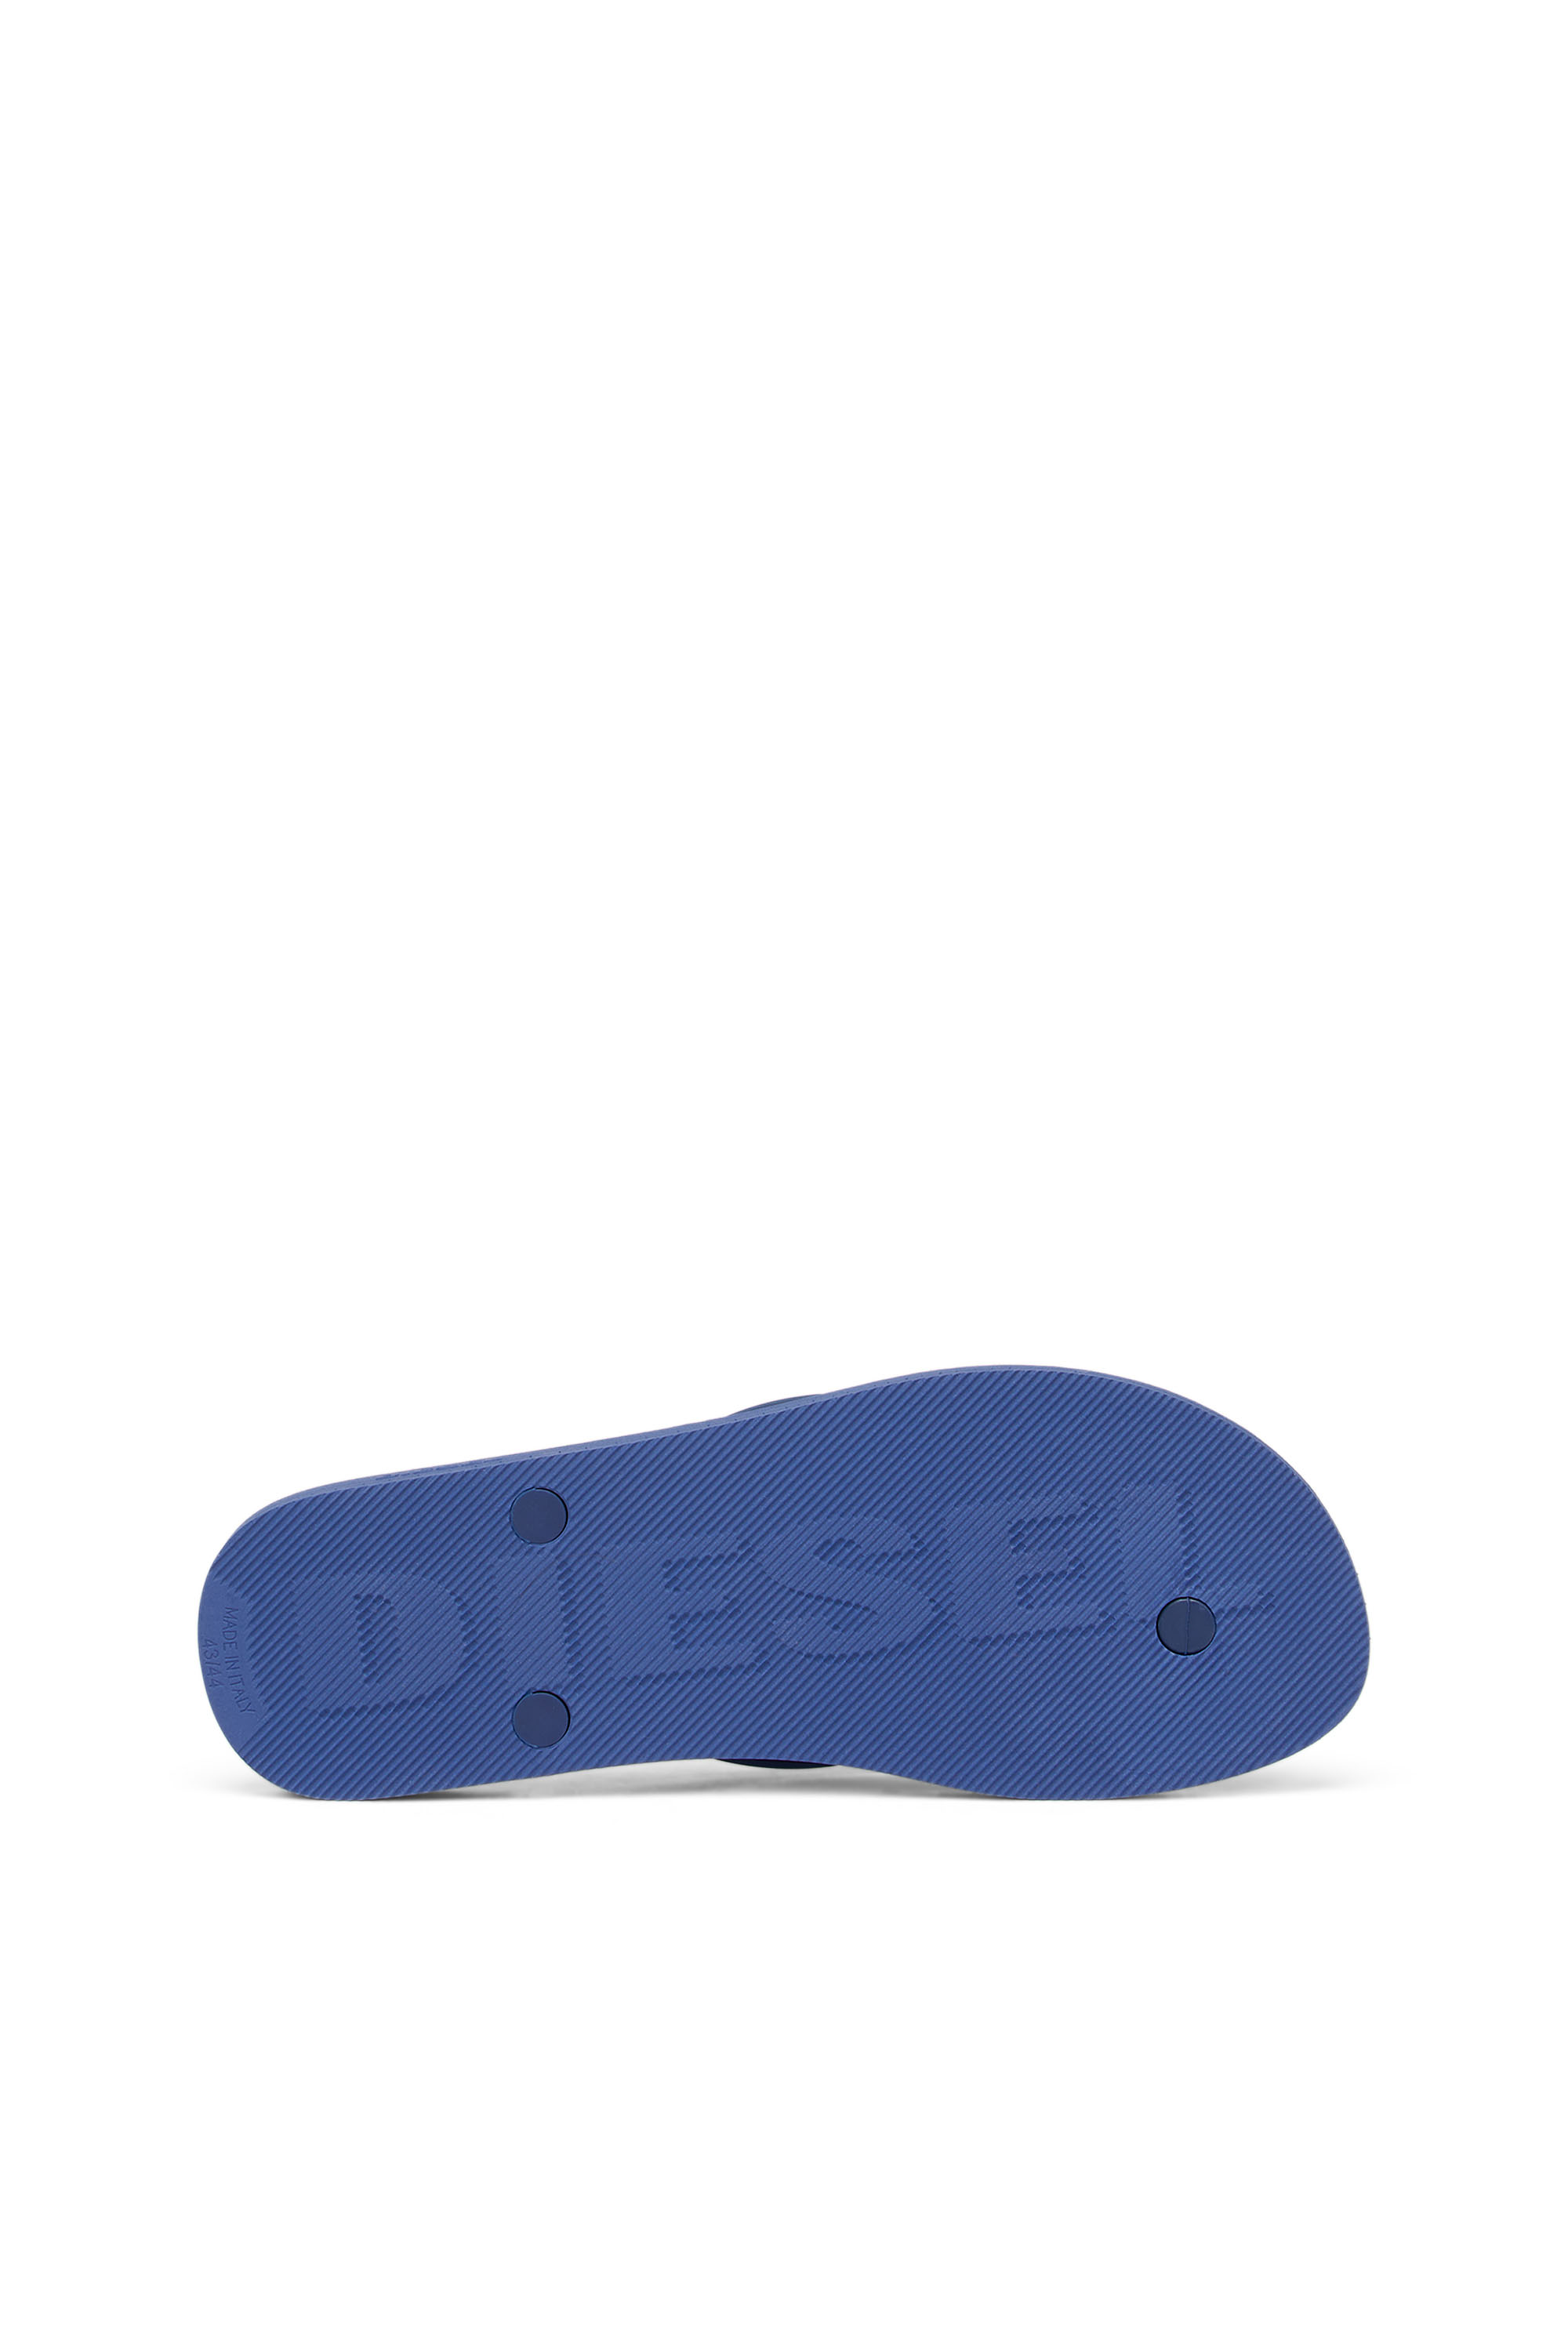 Diesel - SA-KAUAY NL, Blau - Image 4